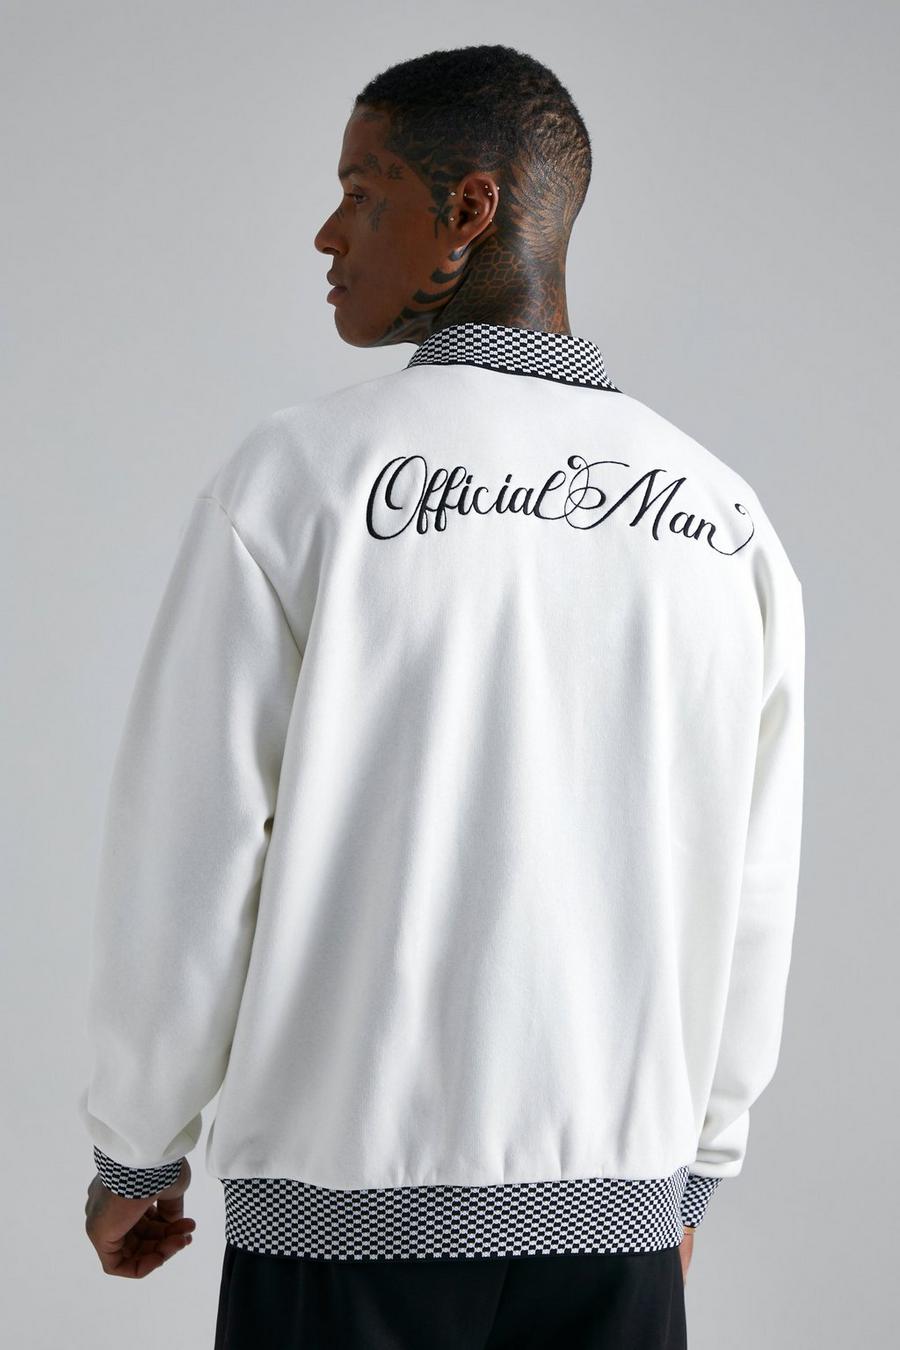 Veste oversize en jersey à carreaux - Official, Ecru blanc